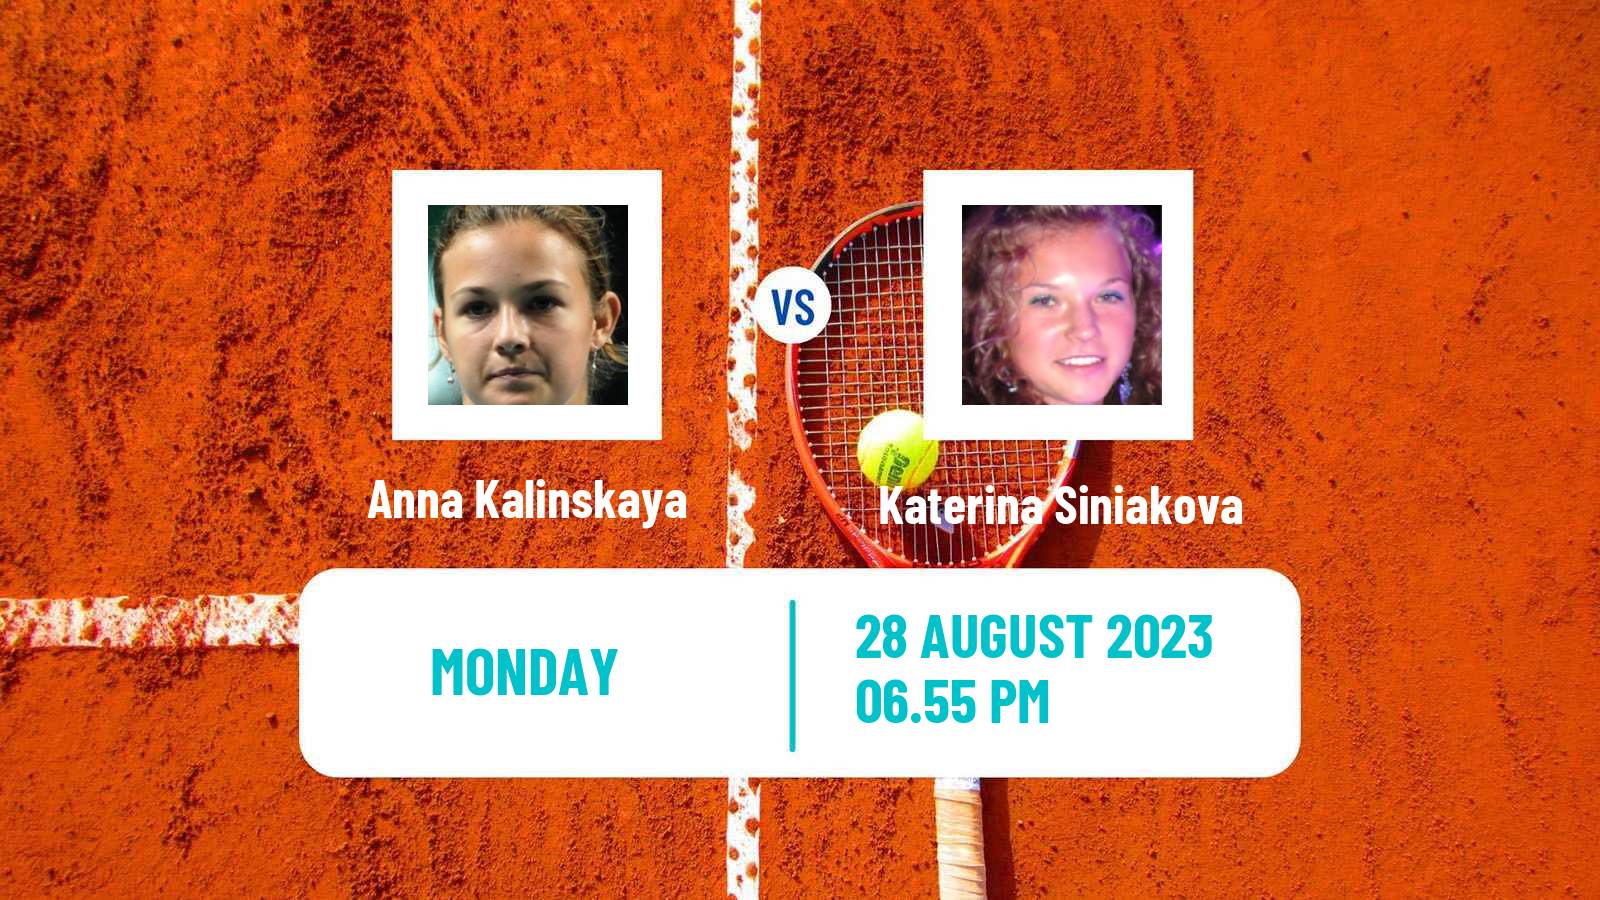 Tennis WTA US Open Anna Kalinskaya - Katerina Siniakova